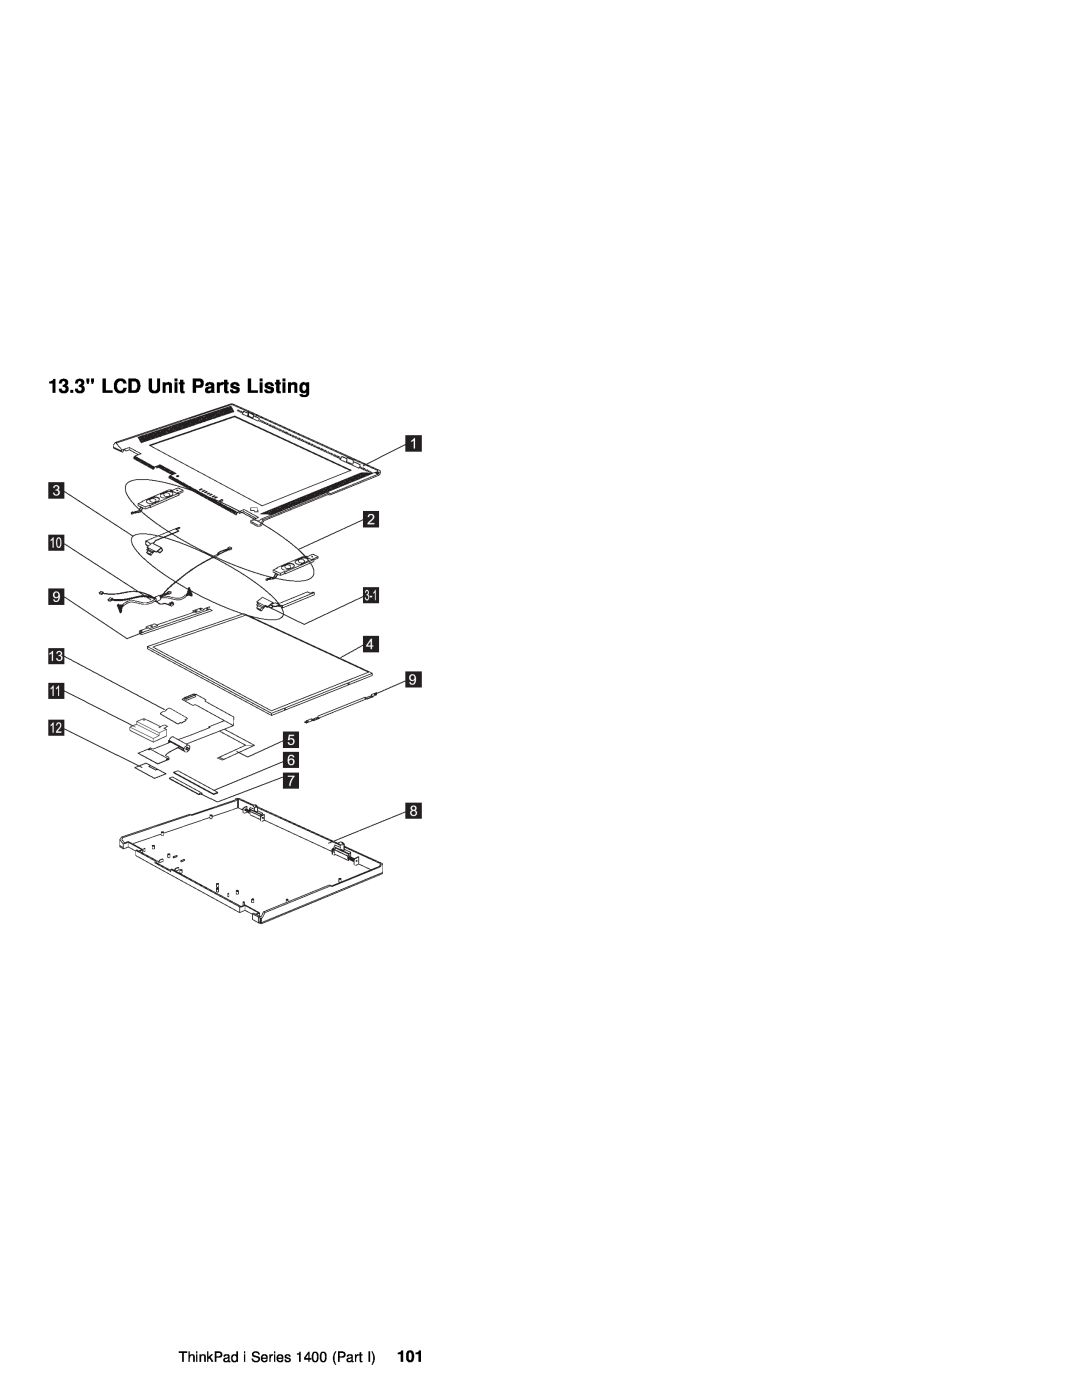 IBM 1400 (2611) manual LCD Unit Parts Listing, ThinkPad i Series 1400 101Part 